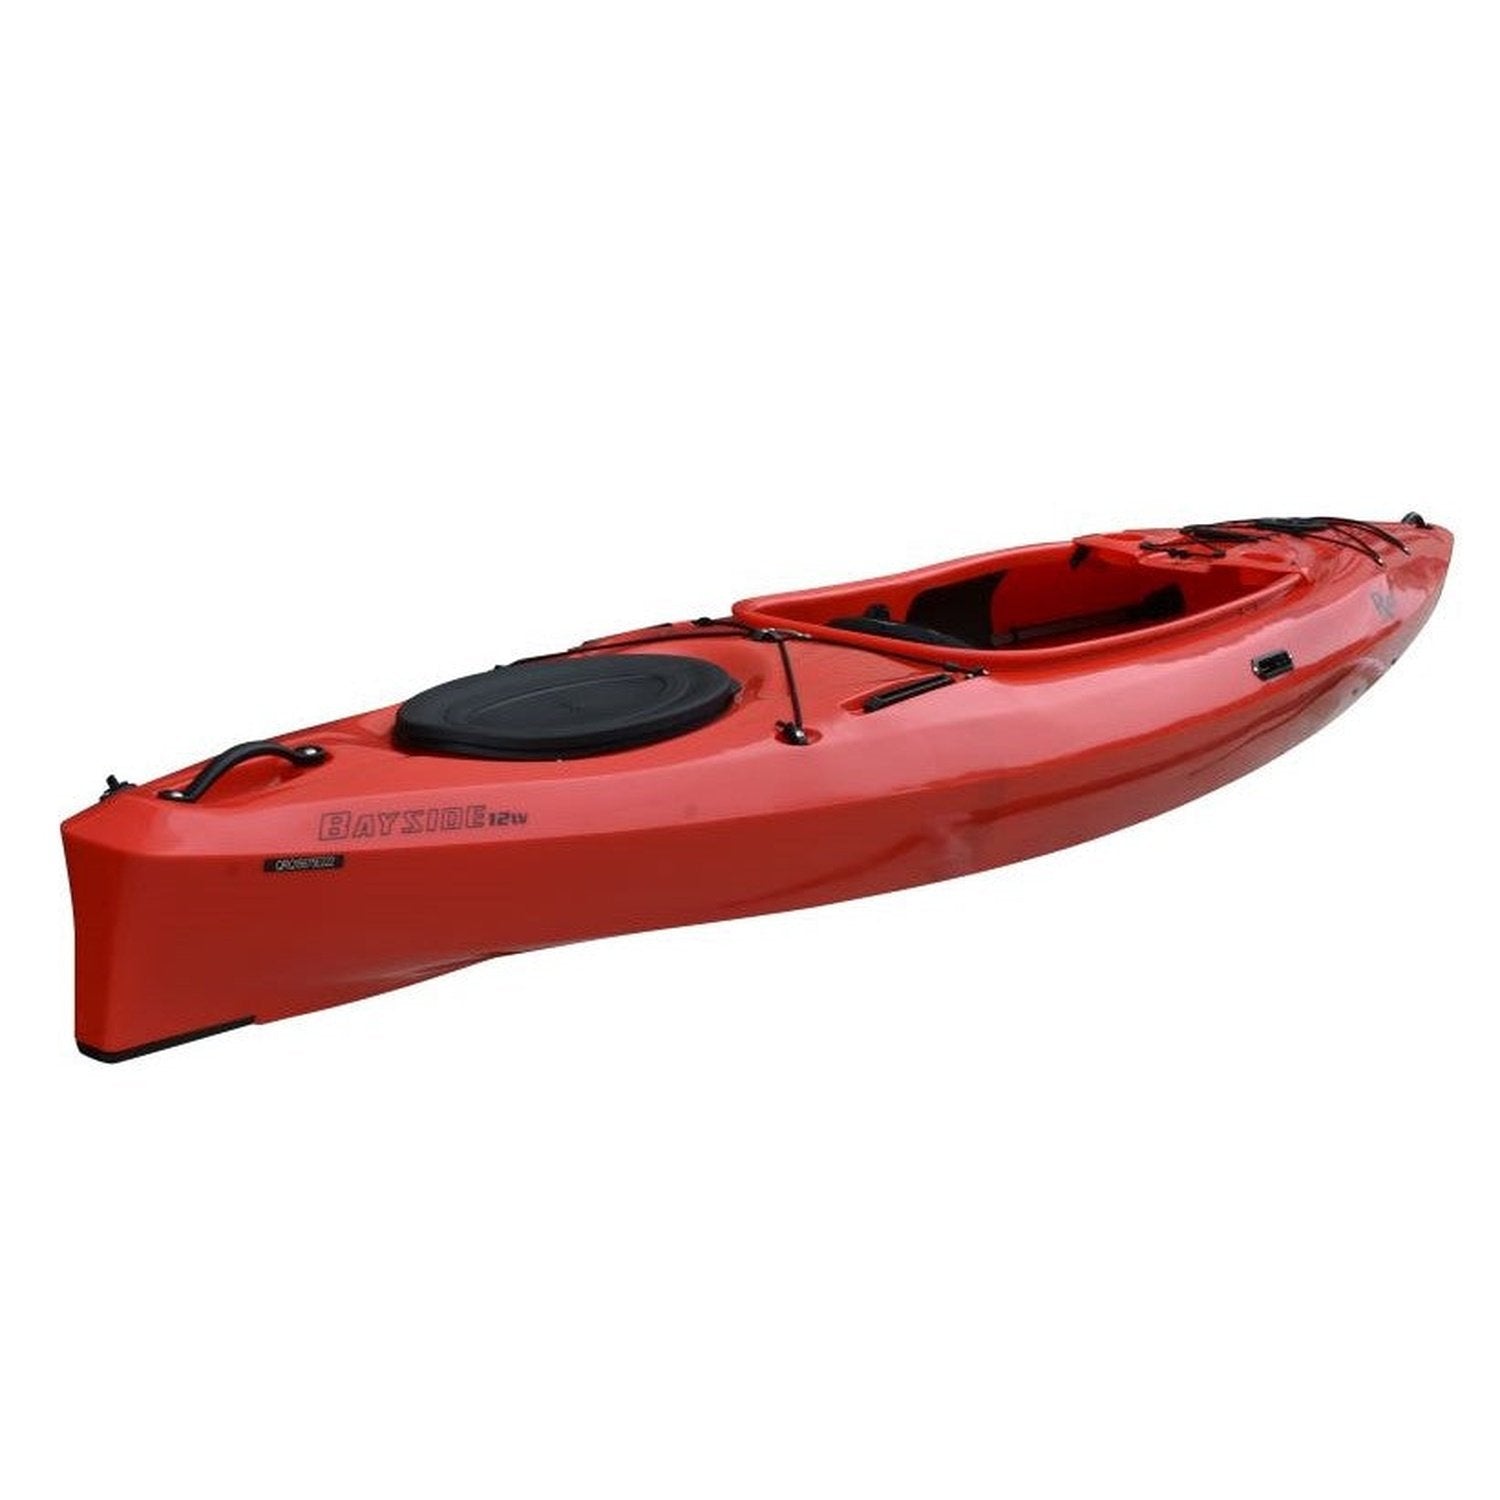 Bayside 12 LV Kayak Angle  View Red